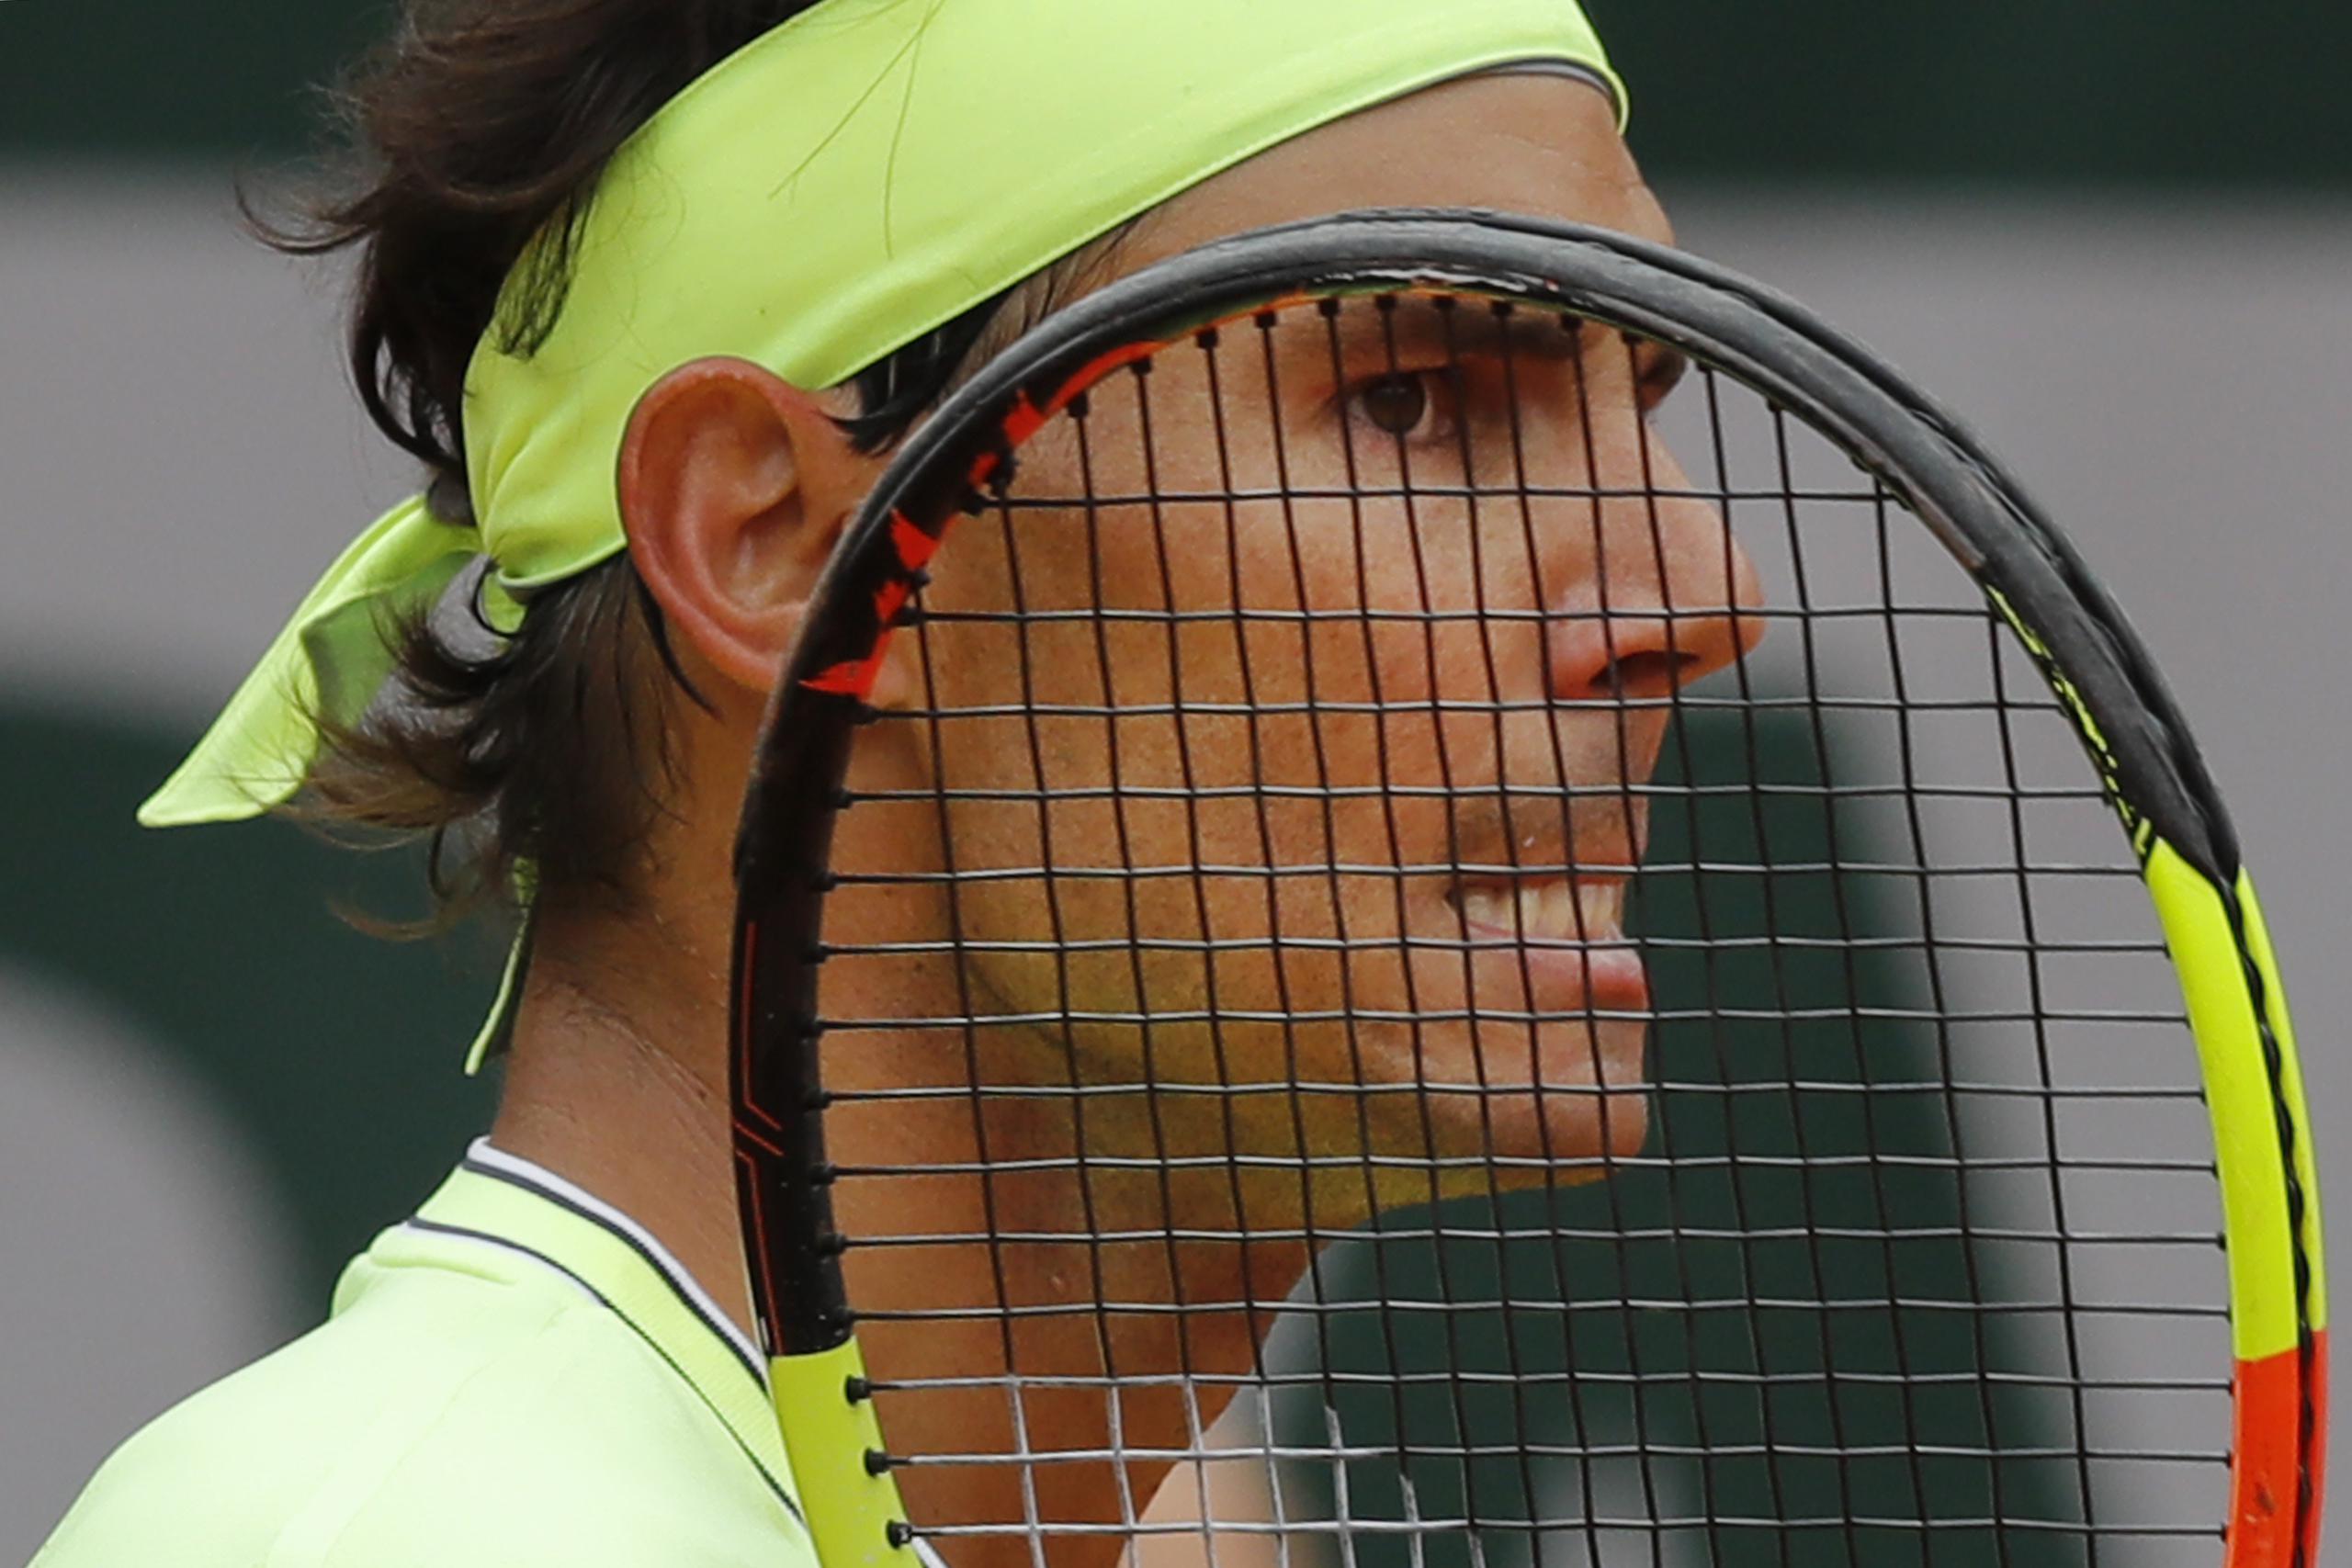 Los organizadores del torneo aún no ha confirmado quiénes serán los competidores, pero se espera que por obvias razones uno de los principales lo sea el español Rafael Nadal.